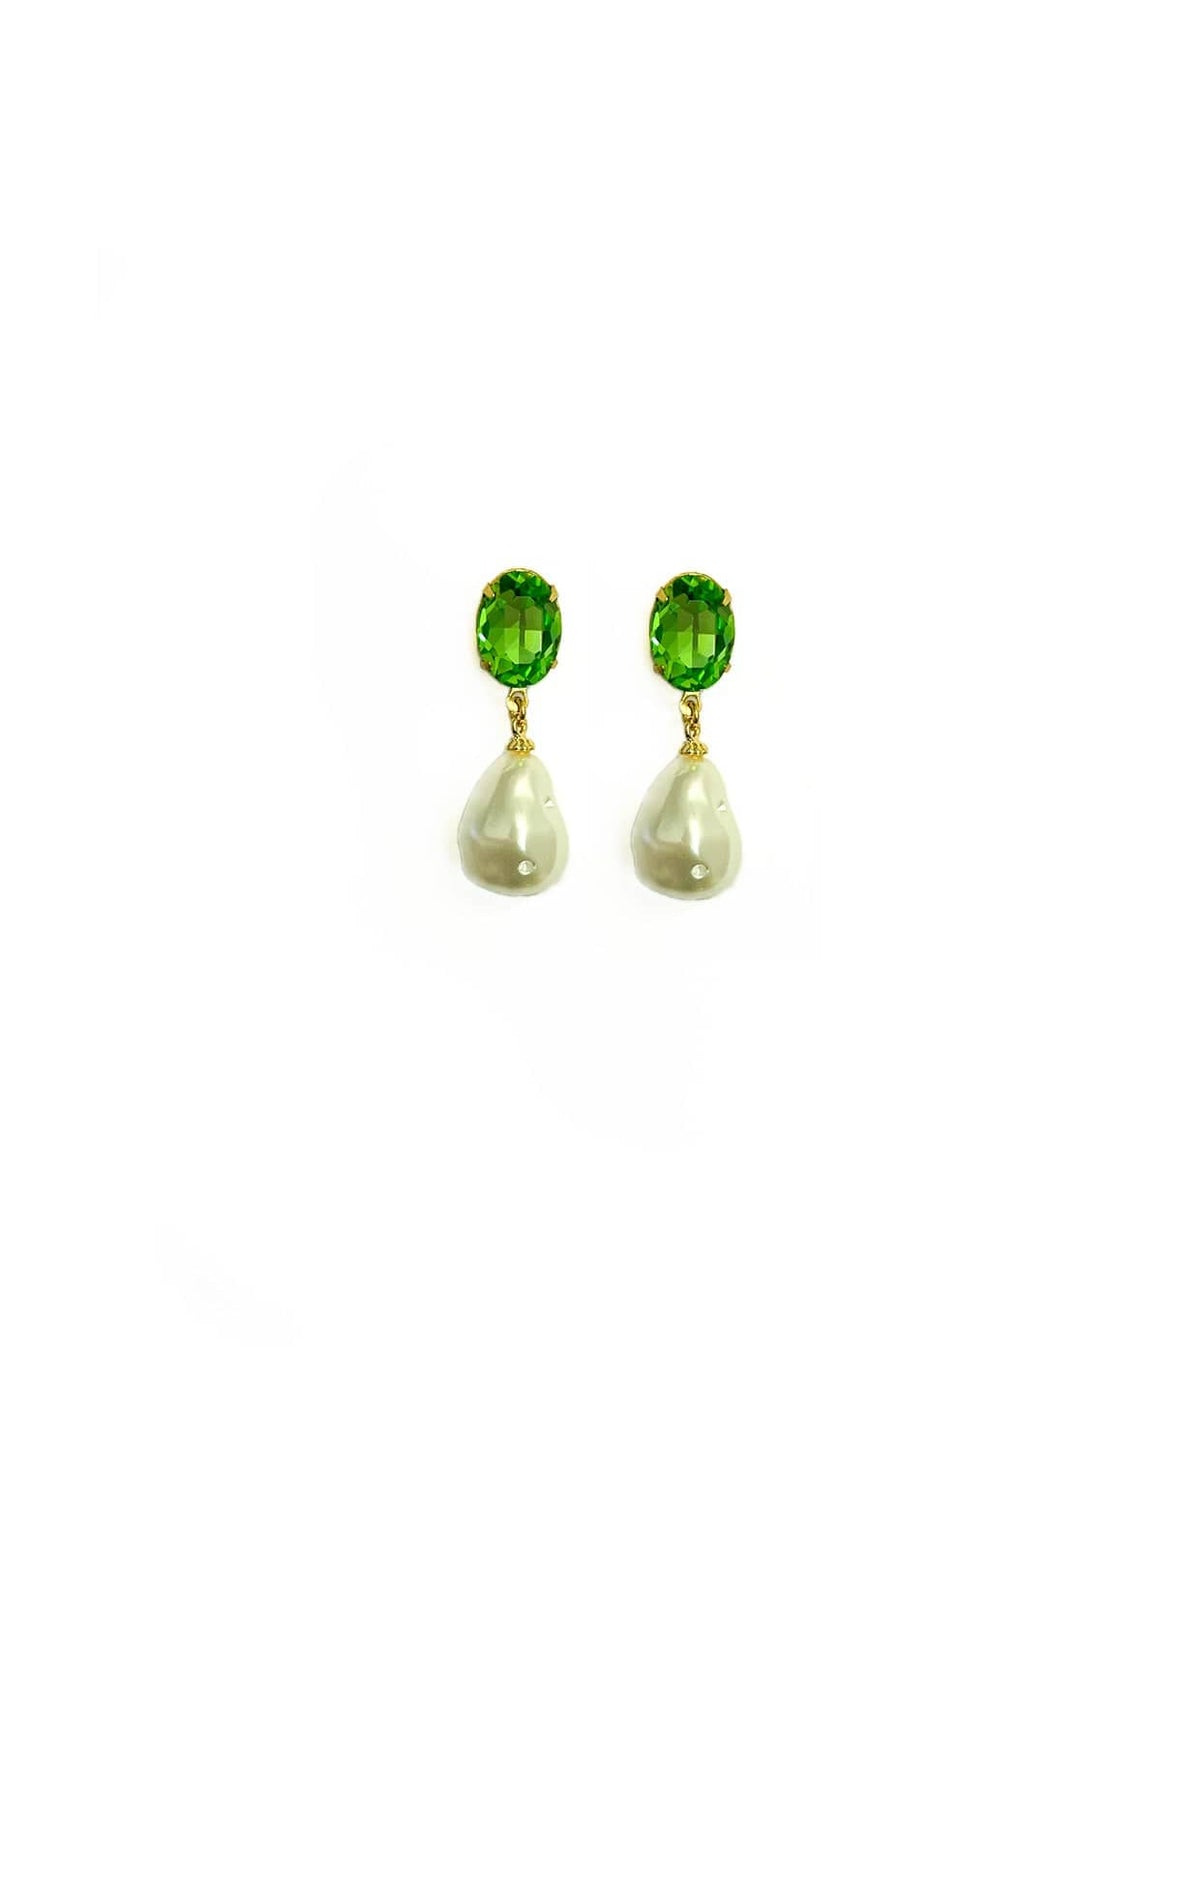 ACCESSORIES Earrings One Size / Green PRUE DROP EARRING IN PERIDOT